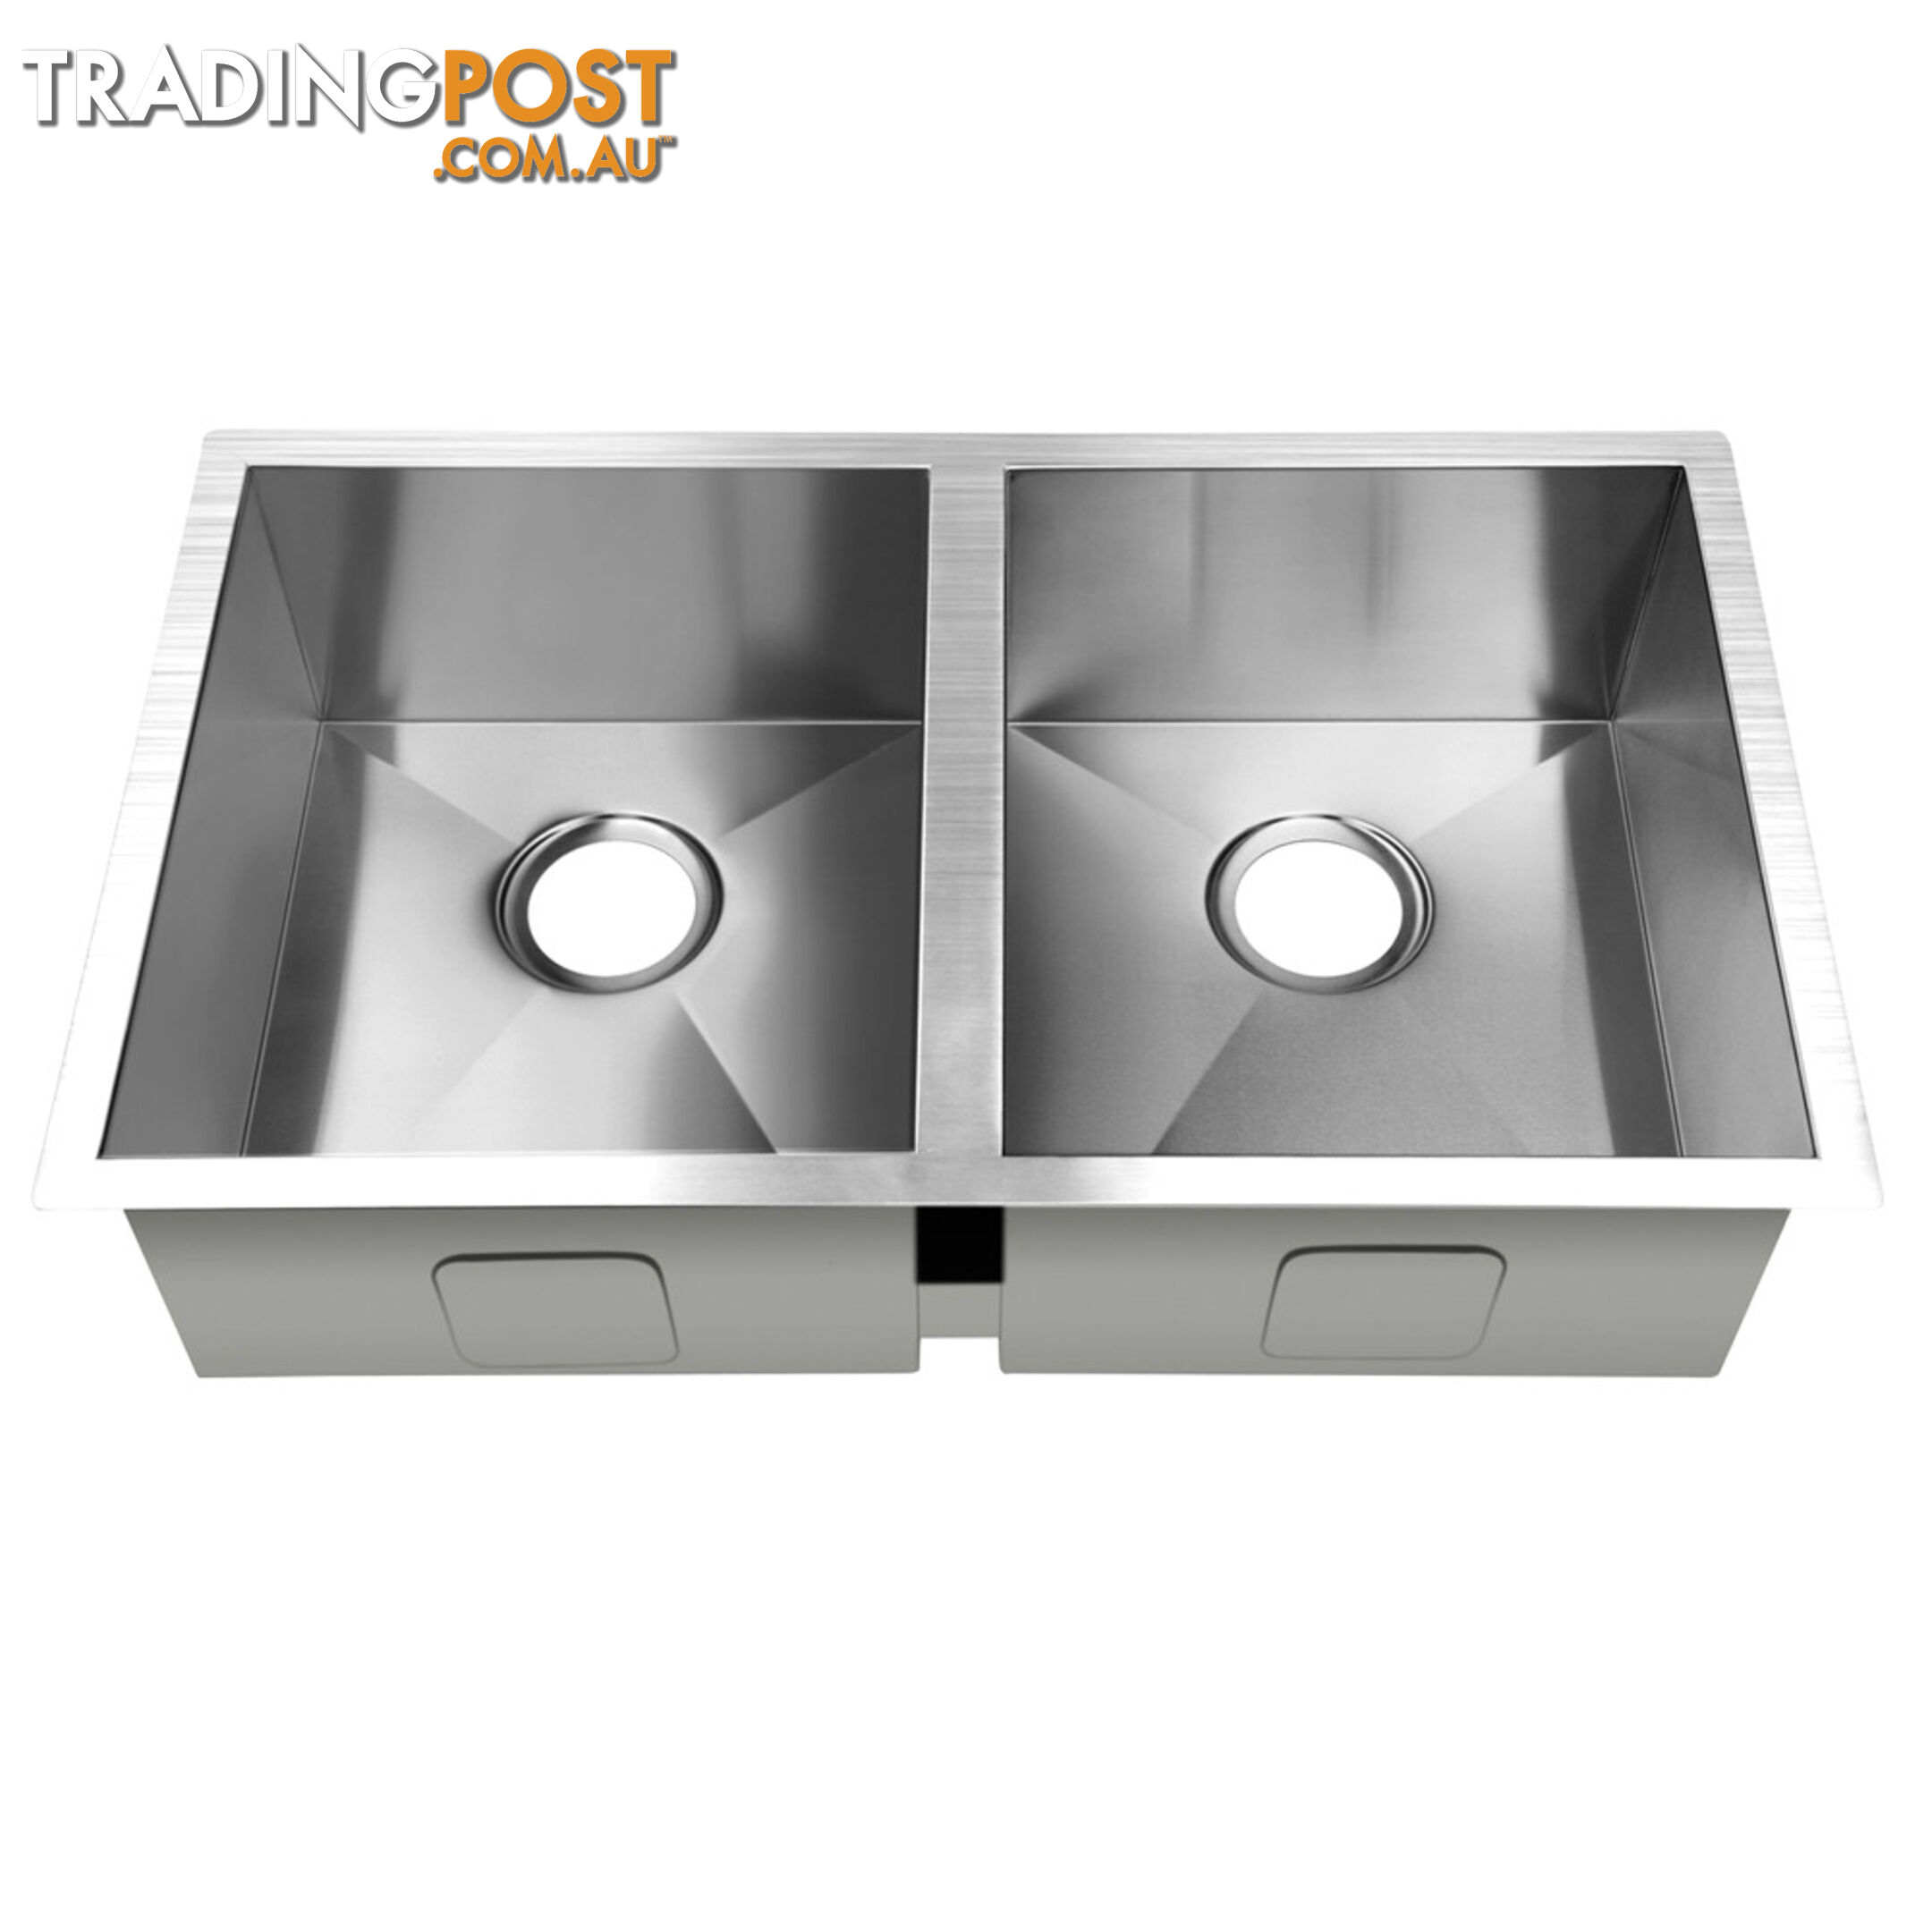 Stainless Steel Kitchen/Laundry Sink w/ Strainer Waste 865x440mm